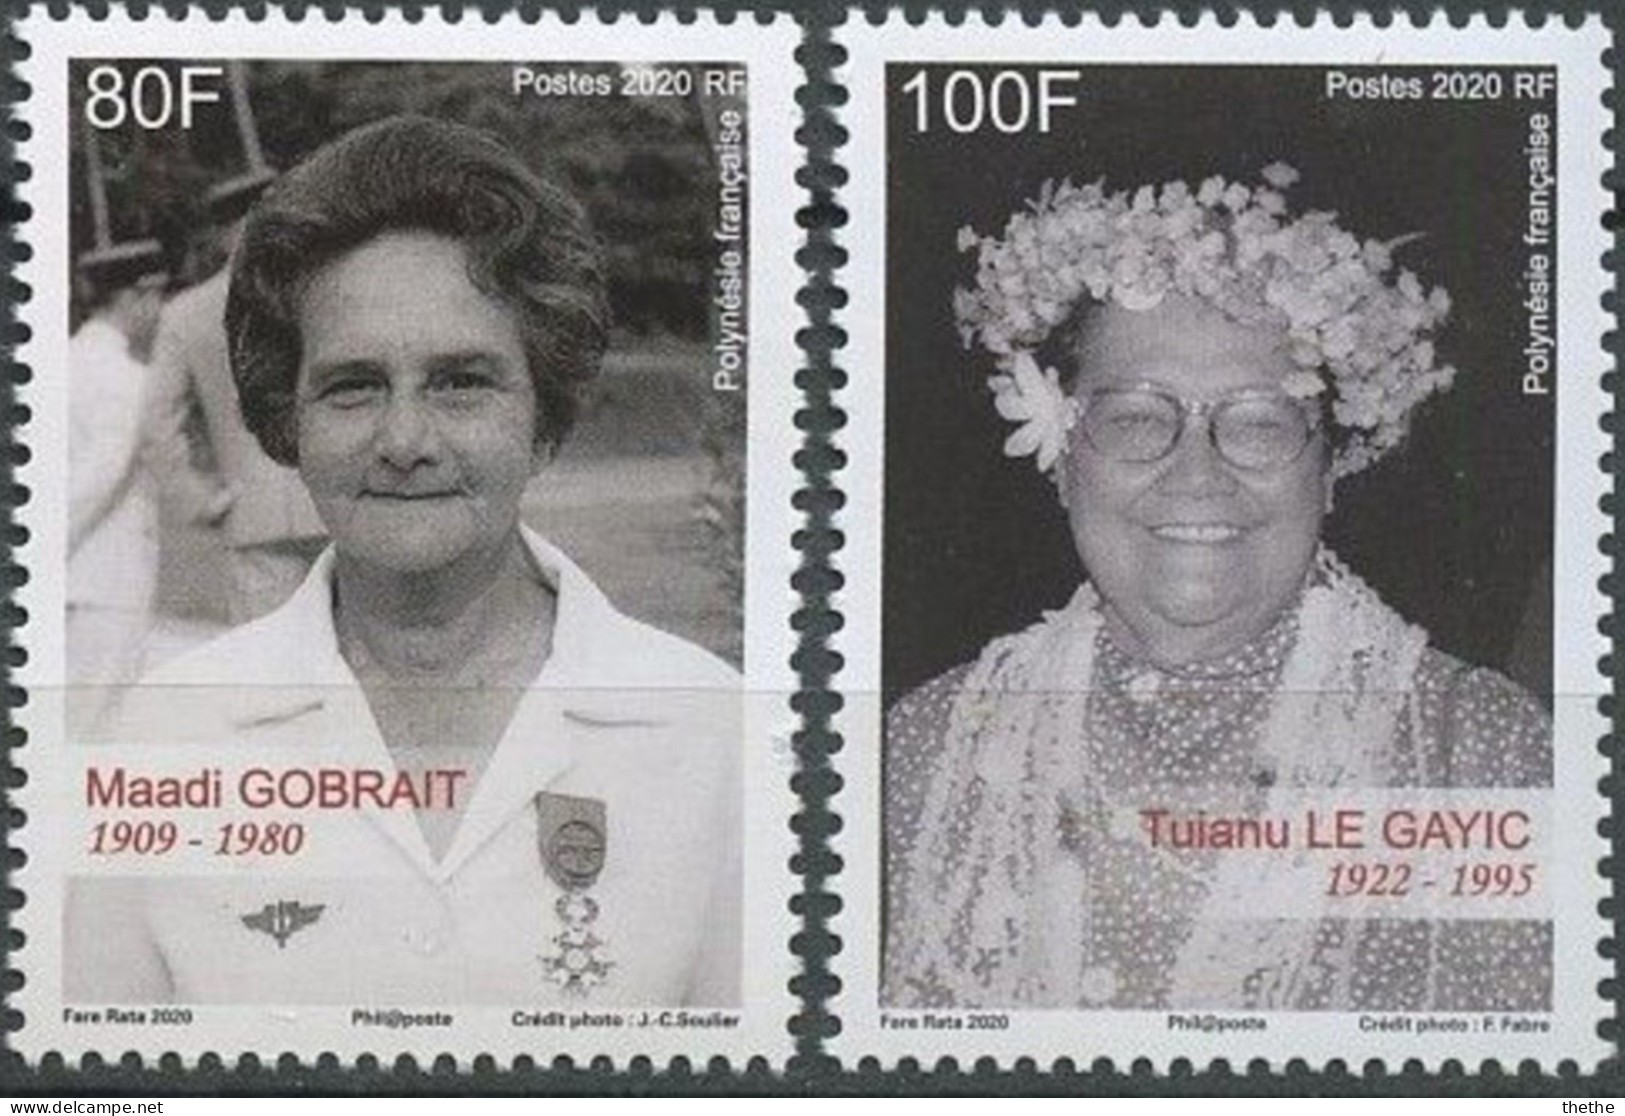 POLYNESIE - Maadi Gobrait (1909-1980), Infirmière Et Militante Politique - Tuianu Le Gayic(1922-1995), Militante Pour Le - Ongebruikt